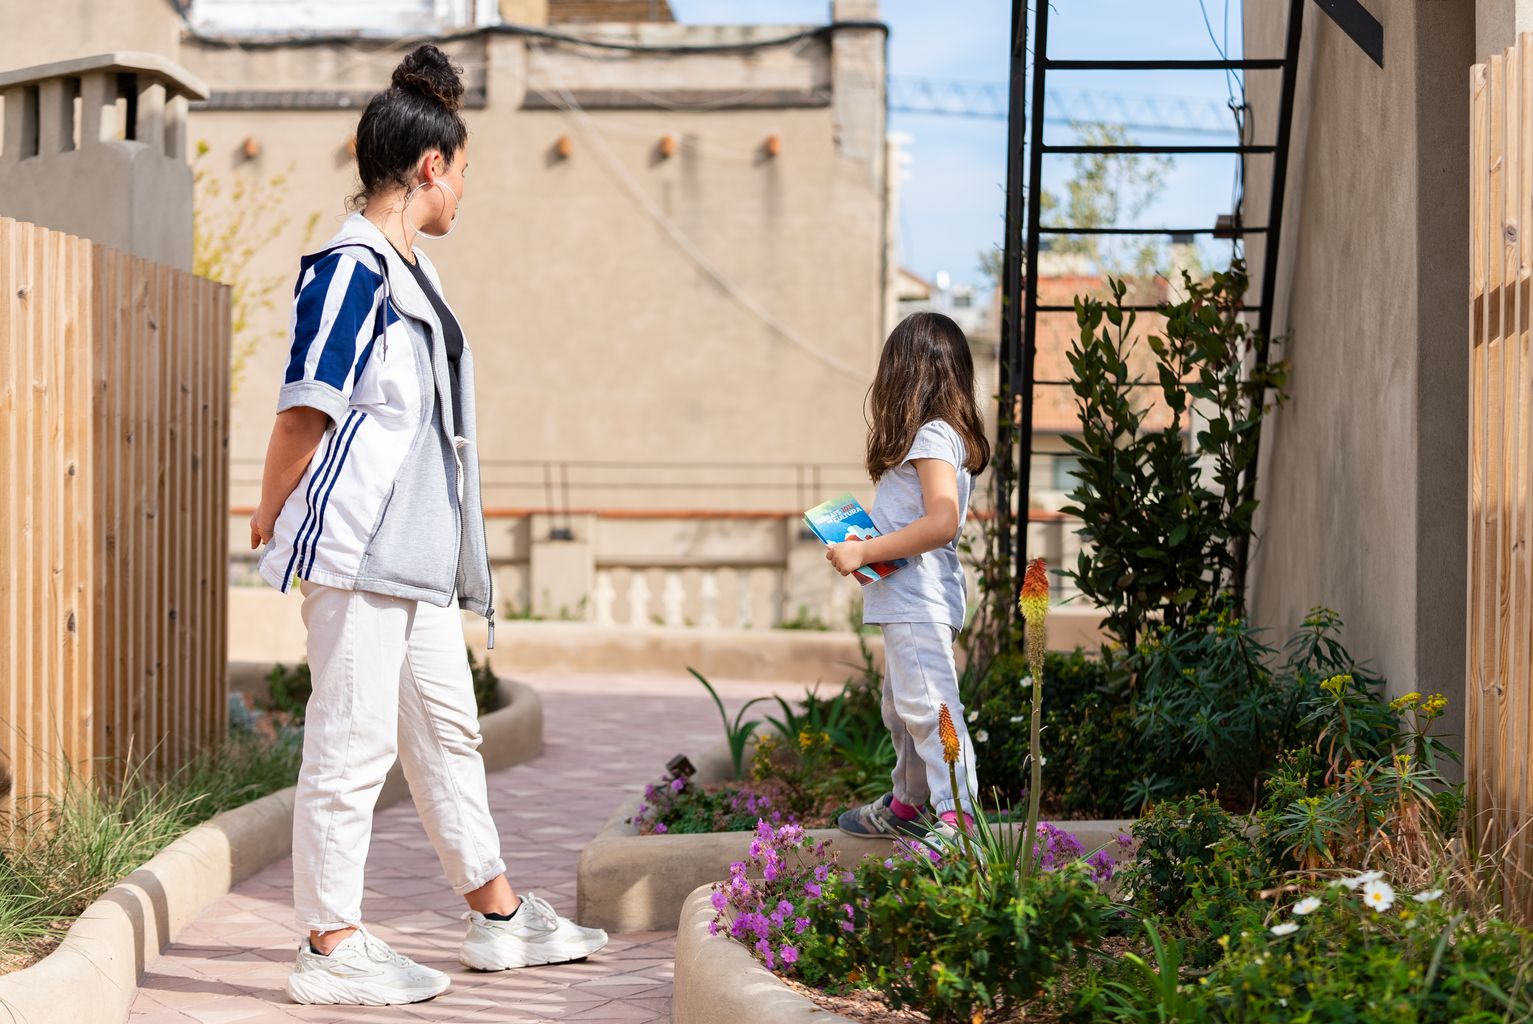 Una noia i una nena petita juguen durant la visita al terrat de l'edifici del carrer de Provença, 268, dins de +MODEL, "Coneix una nova coberta verda"